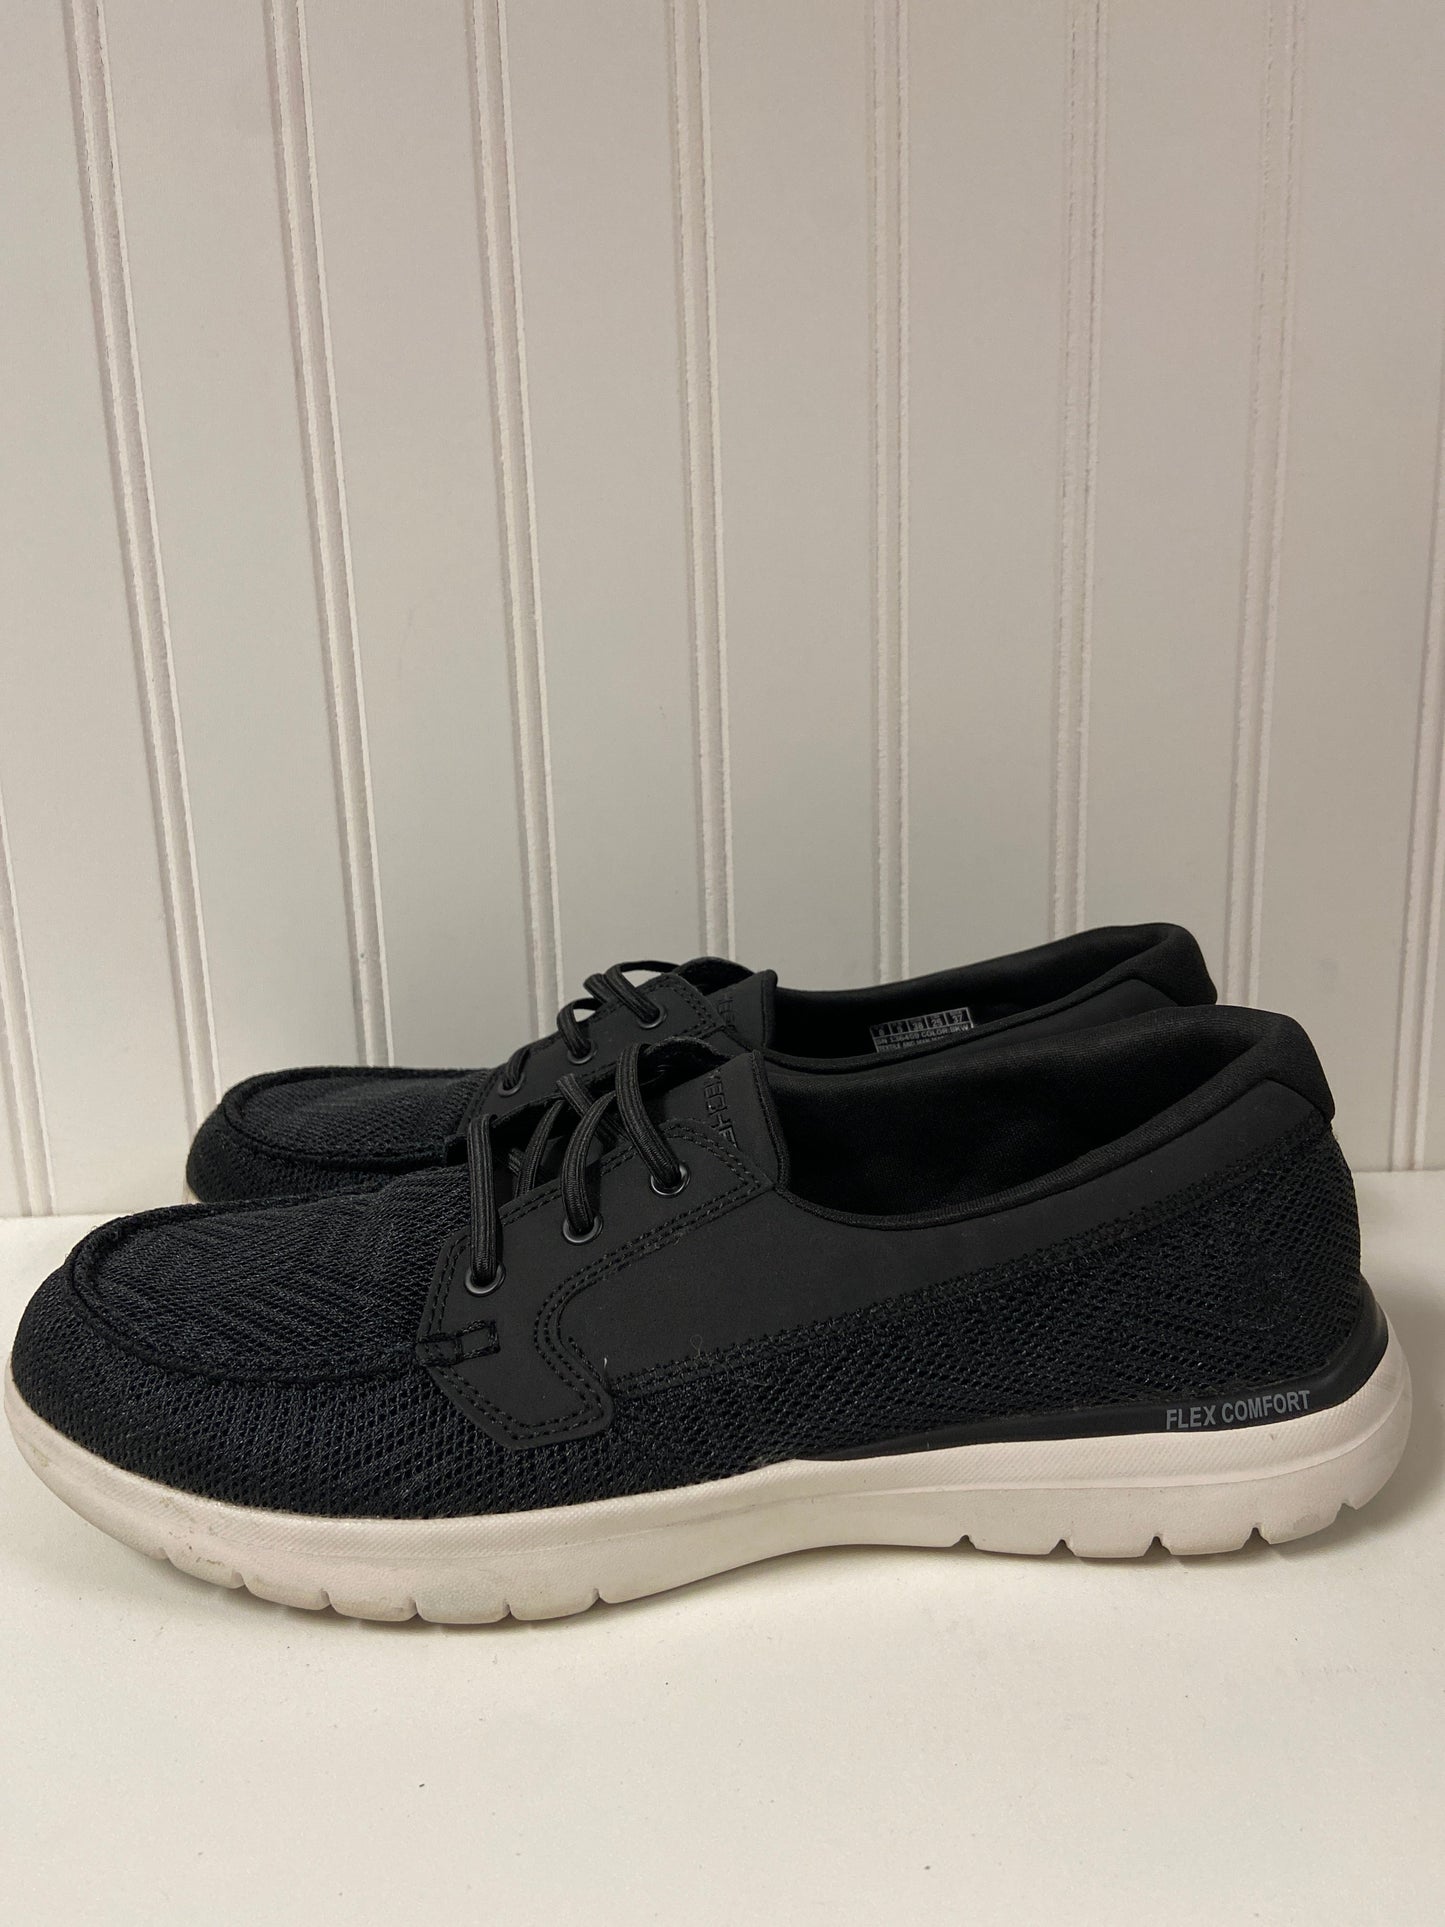 Black Shoes Flats Skechers, Size 8